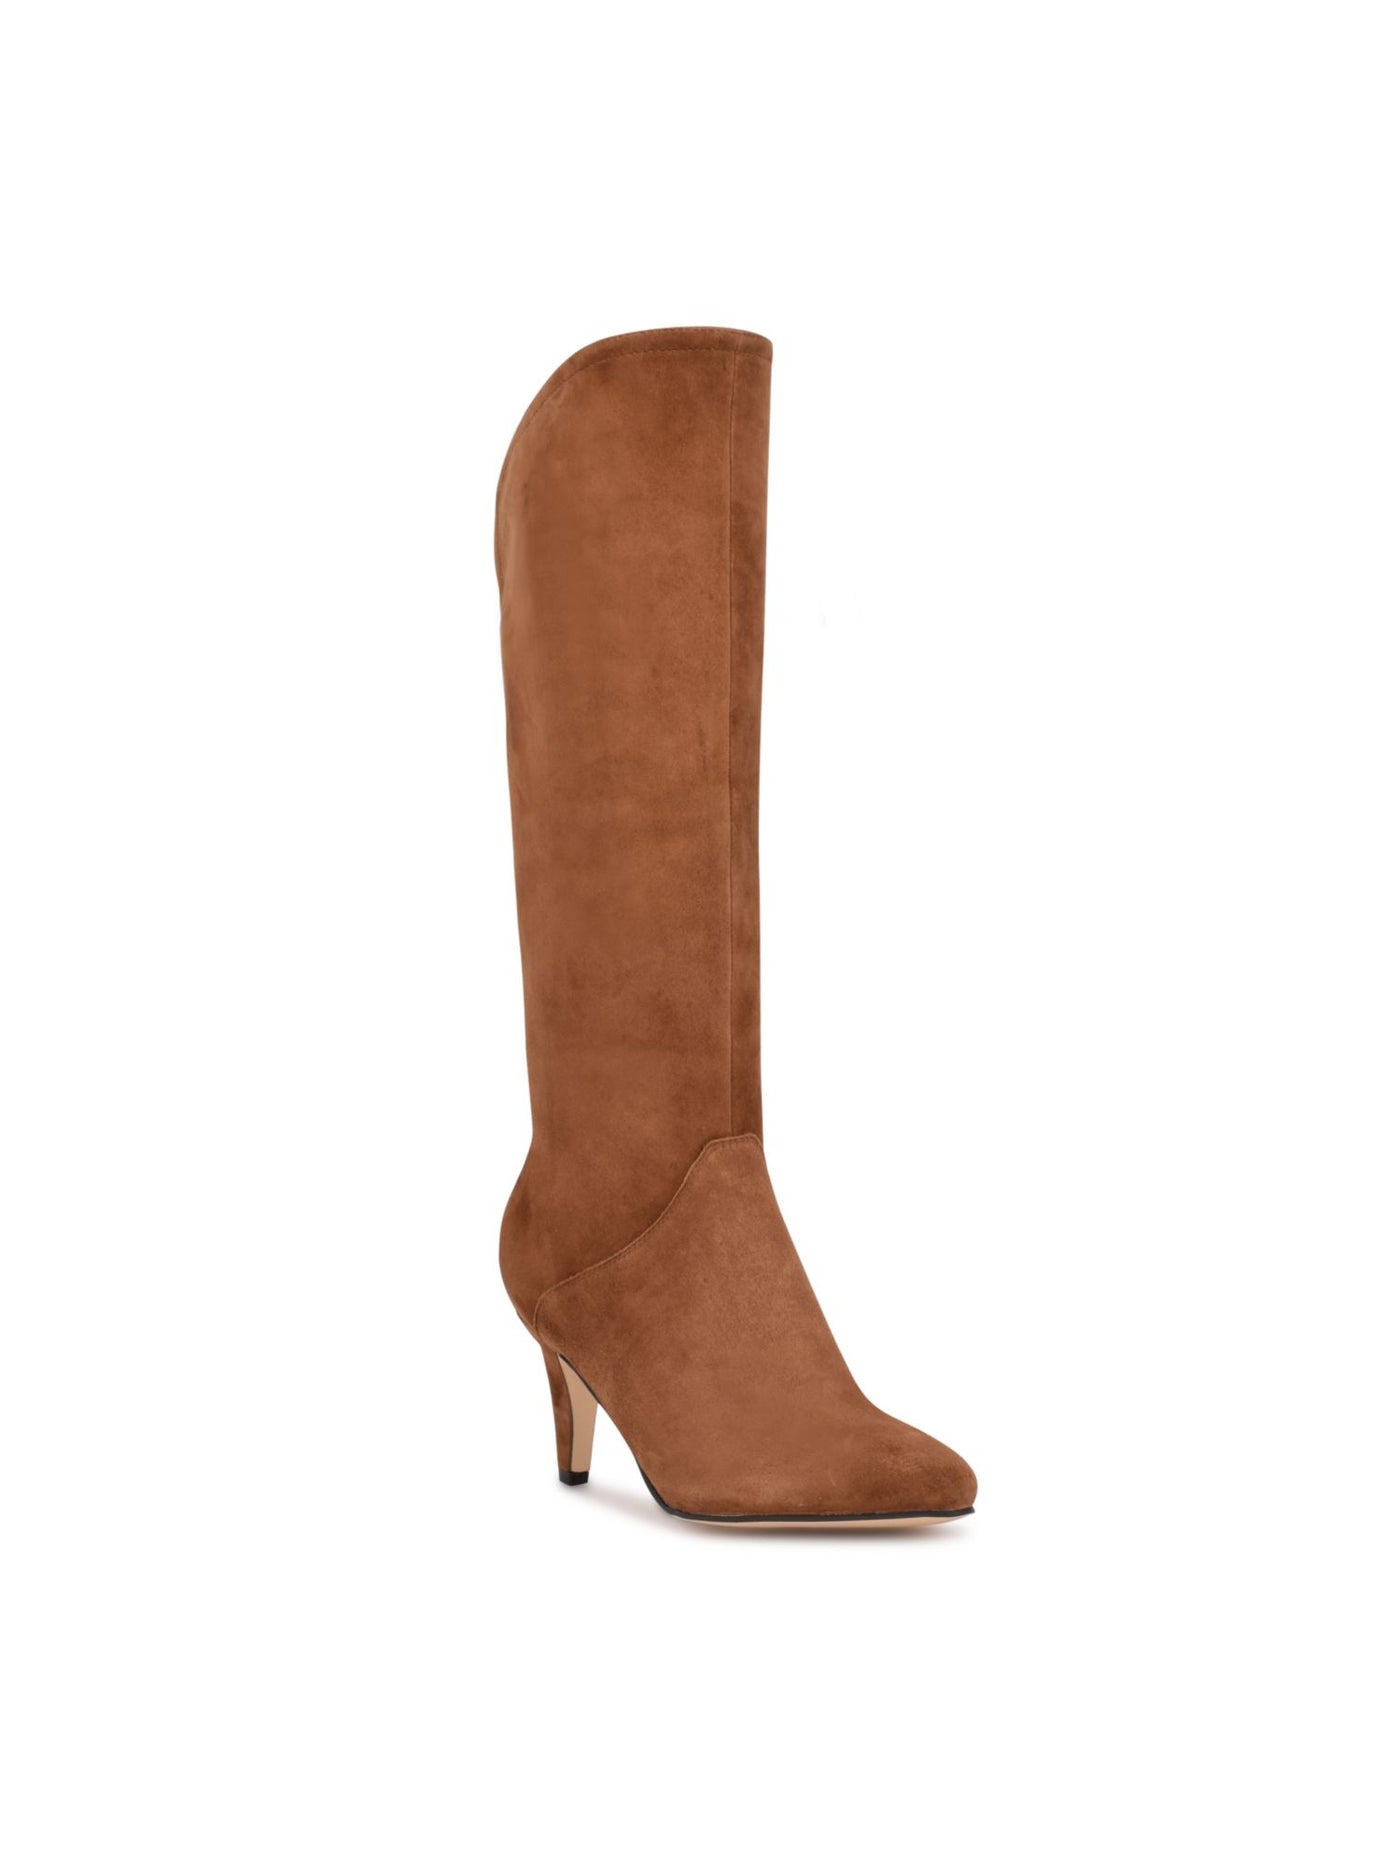 NINE WEST Womens Beige Comfort Danee Pointed Toe Block Heel Zip-Up Leather Dress Boots 5.5 M